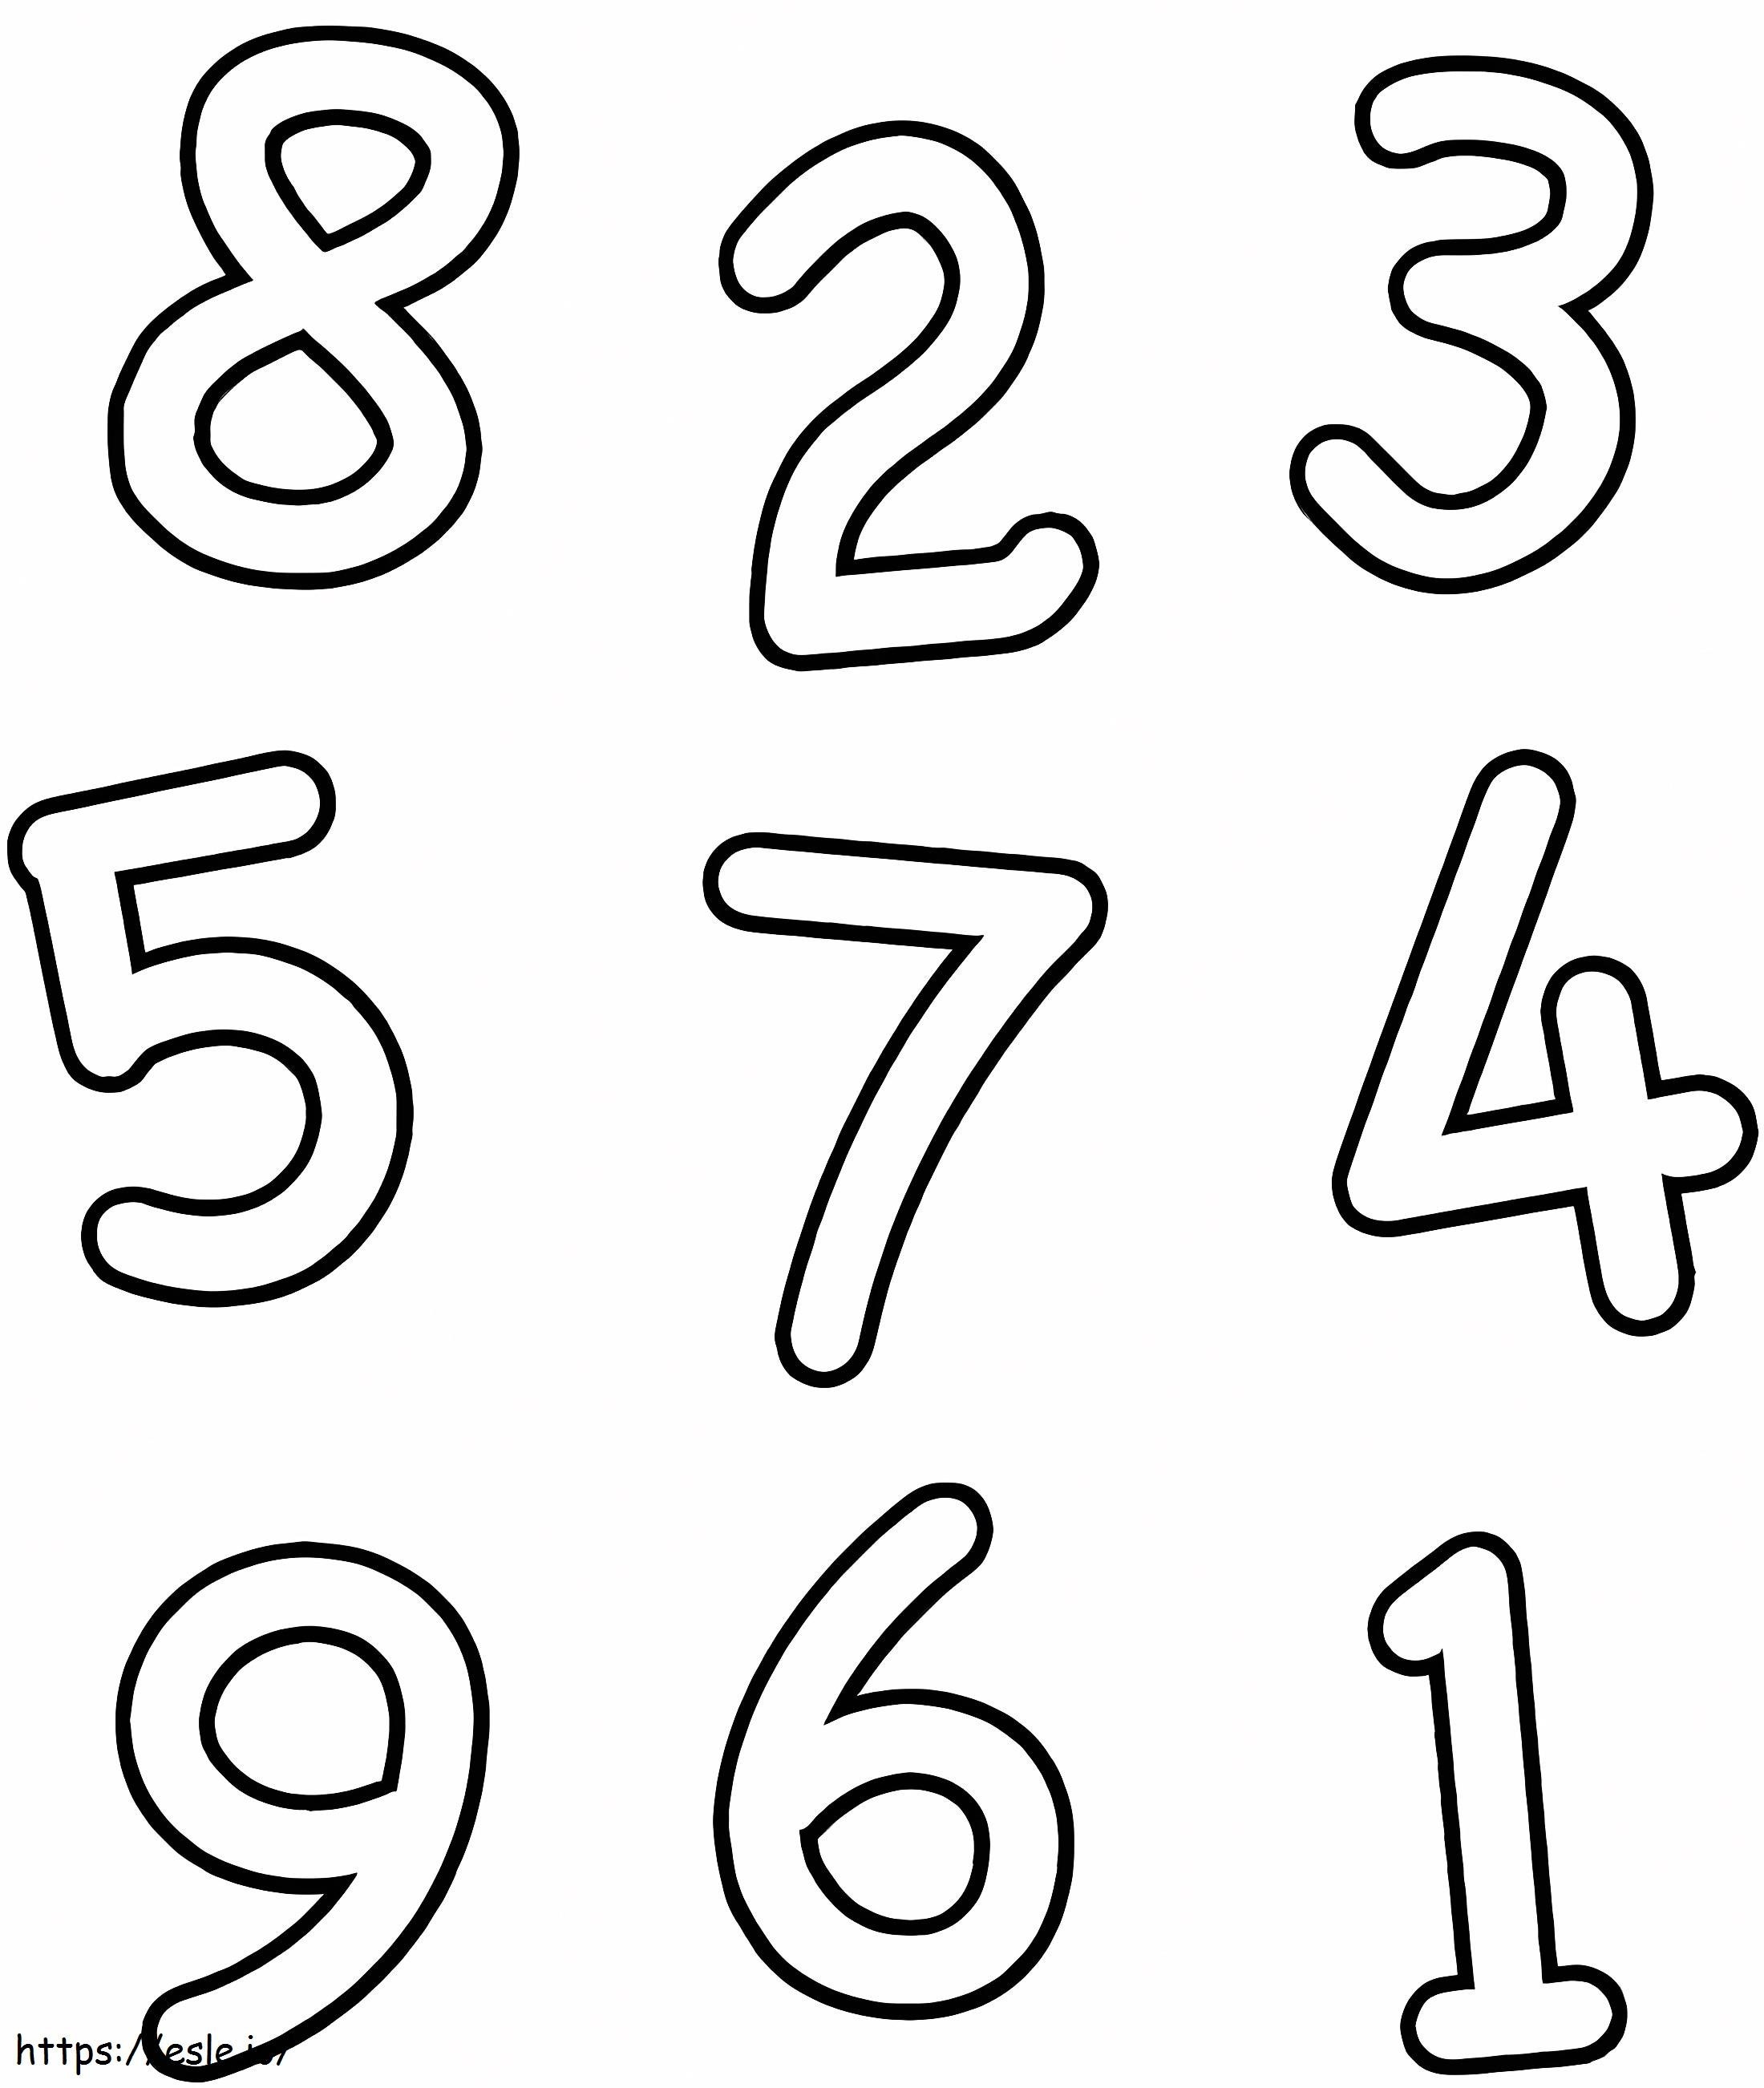 Coloriage Nombres normaux de 1 à 9 à imprimer dessin